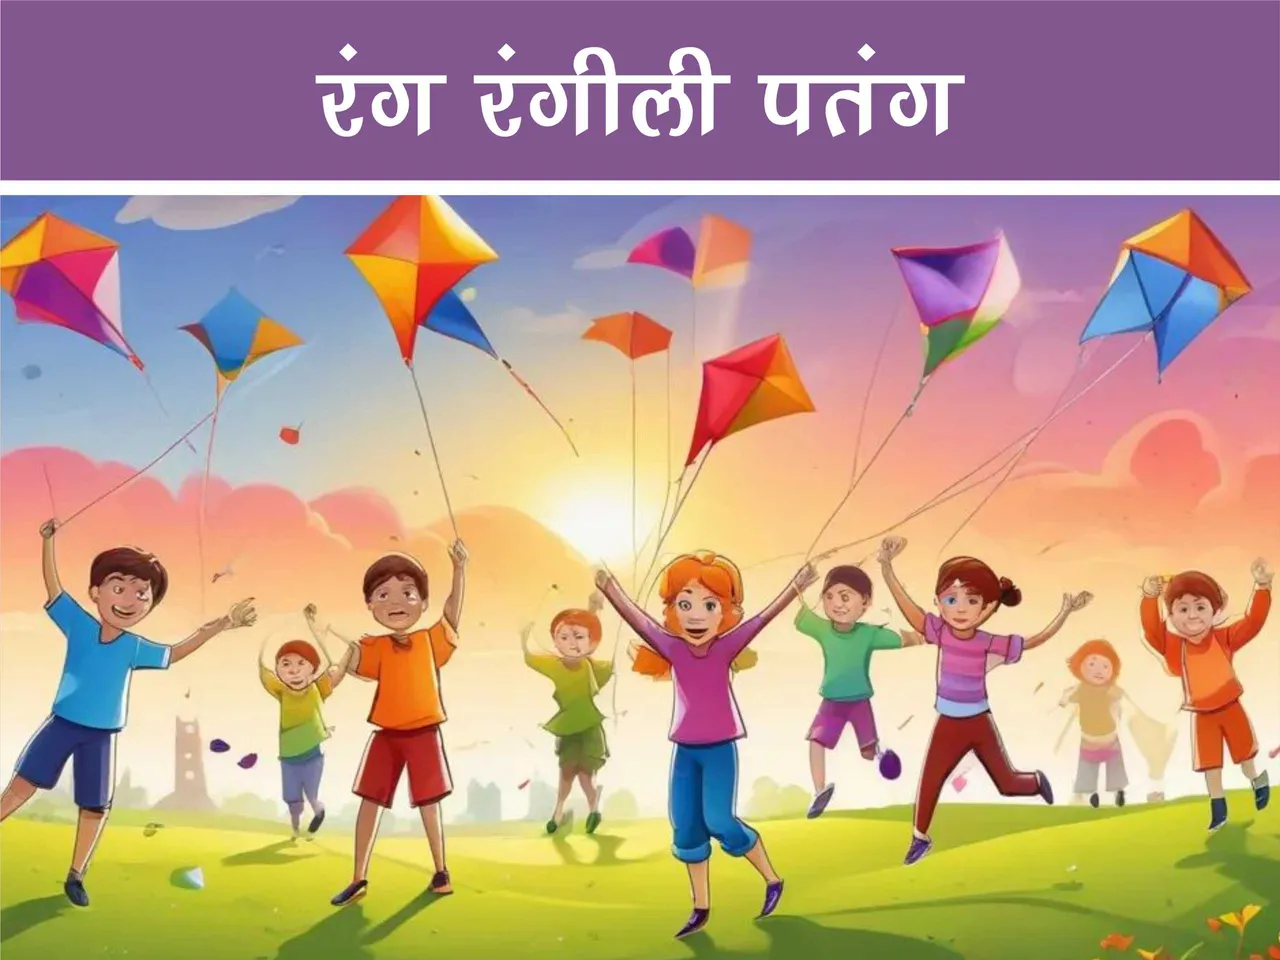 cartoon image of kids flying kites